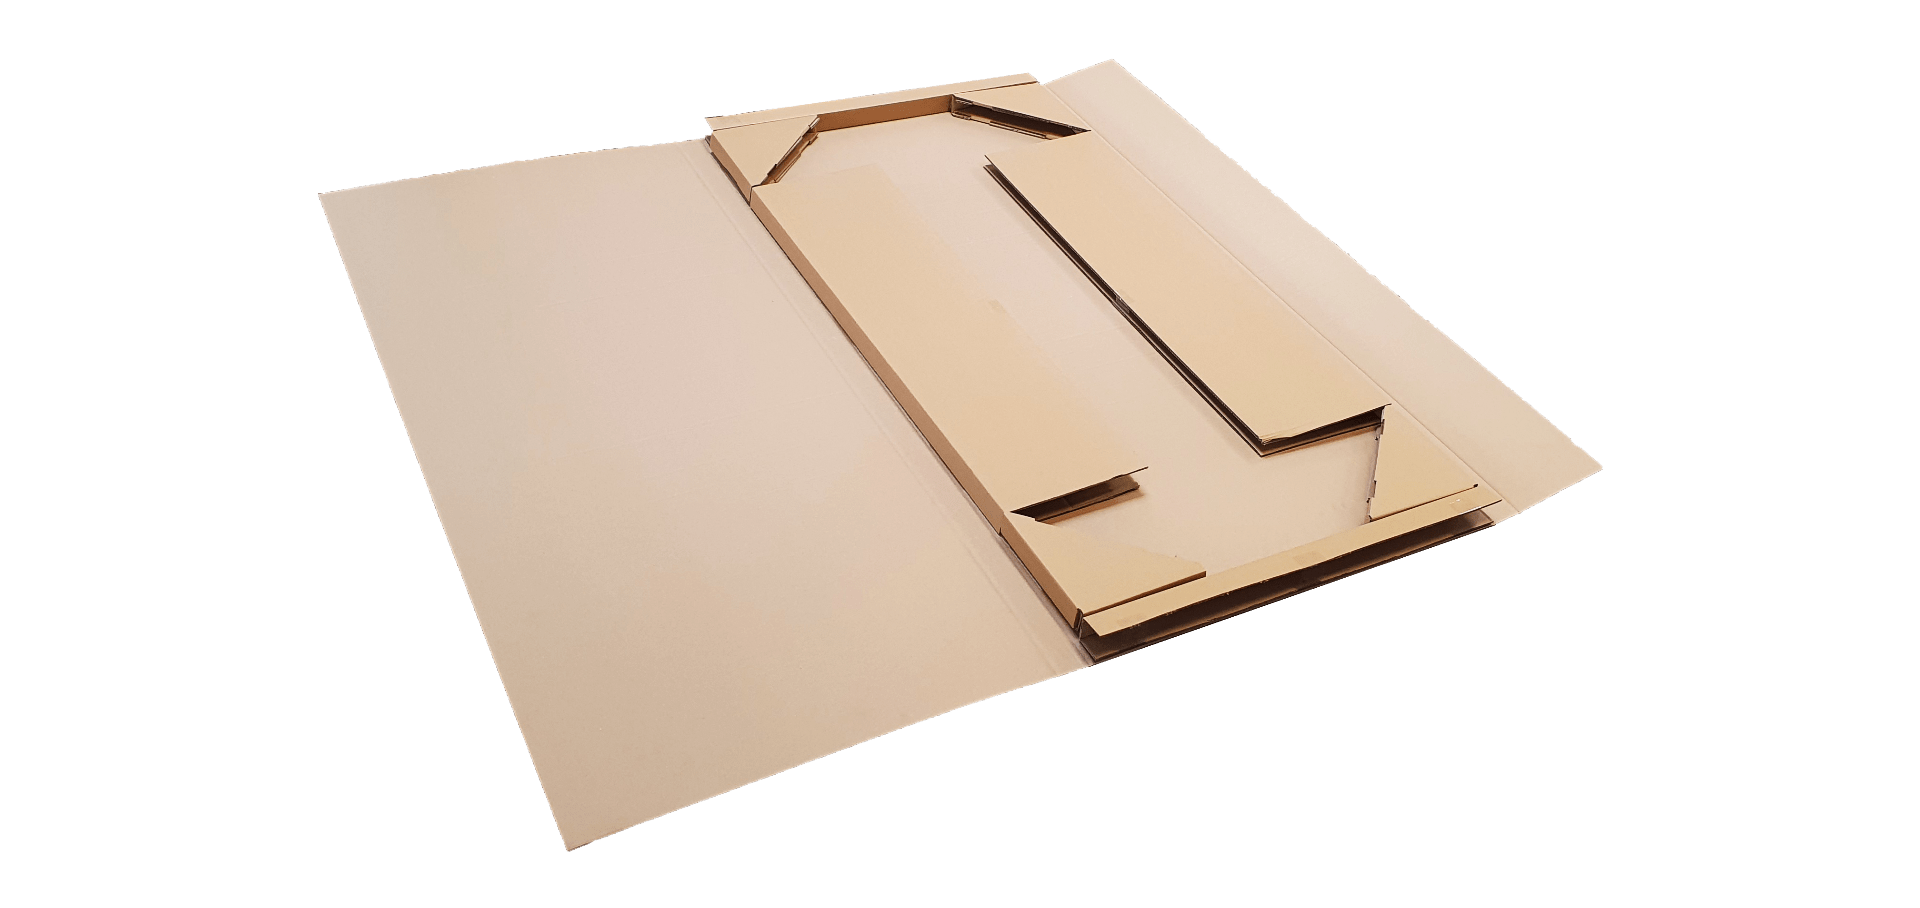 Tabletop packaging